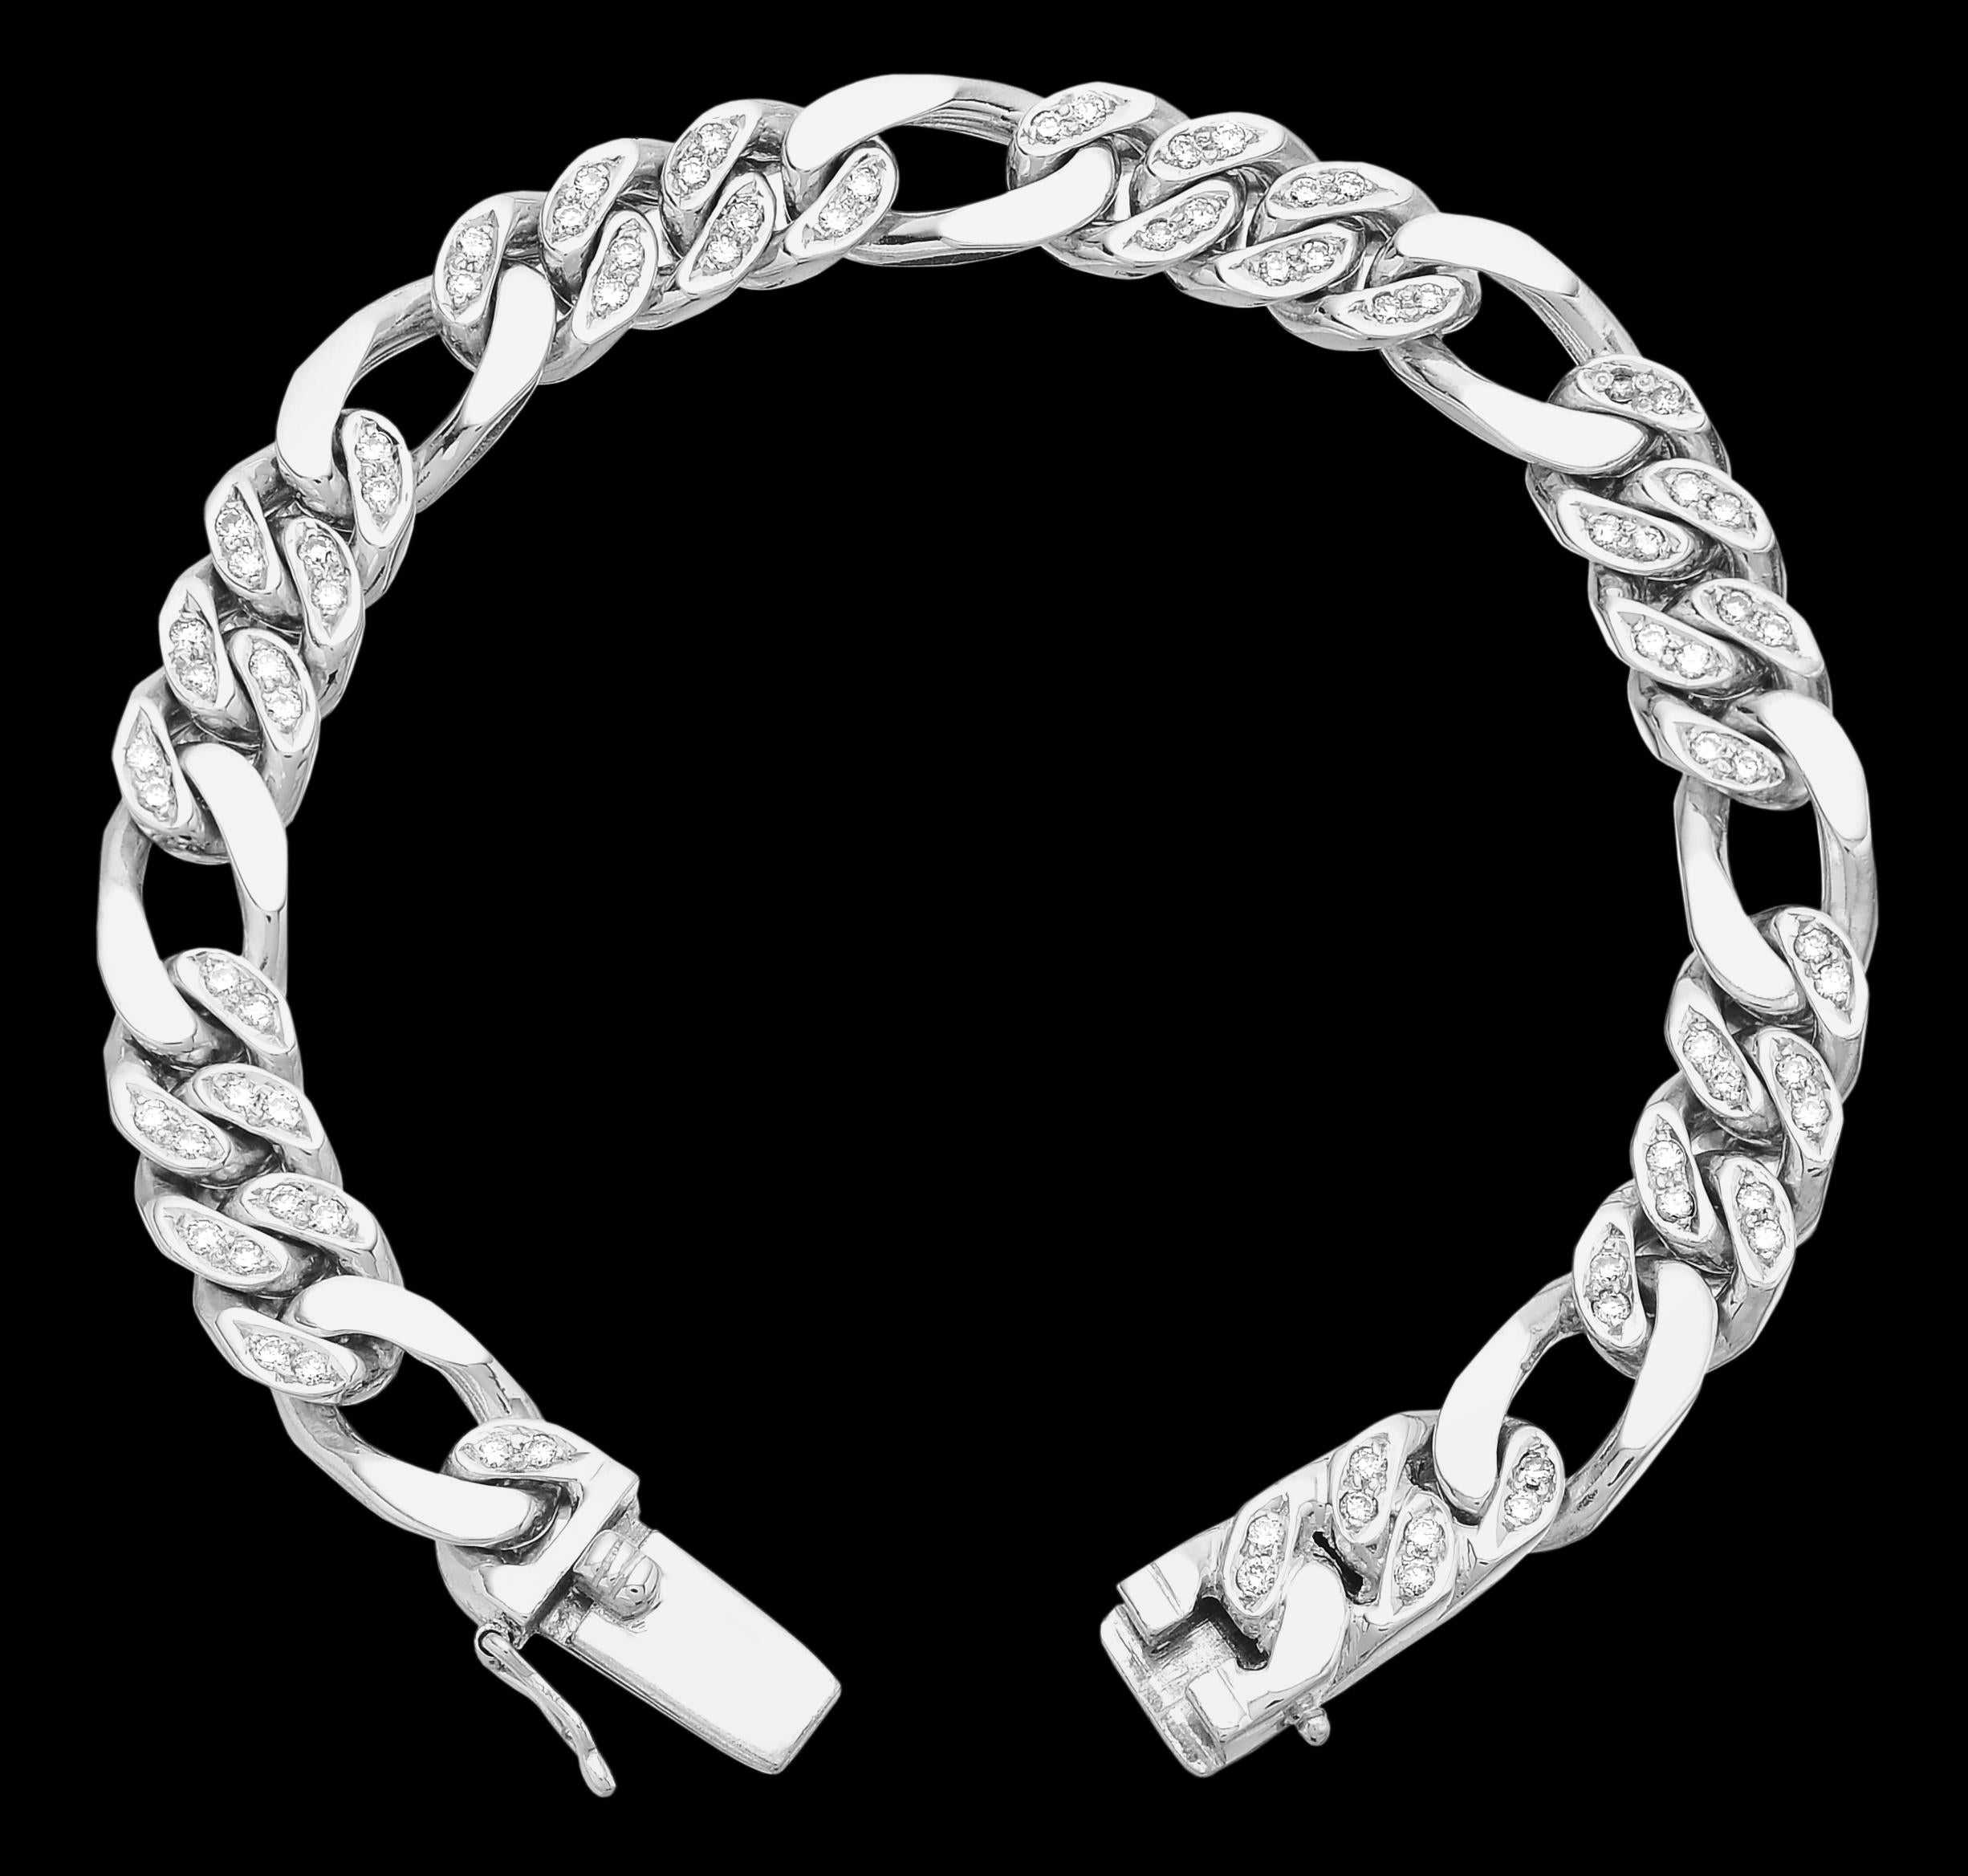 Bracelet en or blanc 14 ct à maillons de Figaro sertis de diamants

Ressemblant à des liens infinis et indéfectibles, ce bracelet en chaîne serti de diamants témoigne d'une forte personnalité. Les maillons sont fabriqués de manière immaculée et